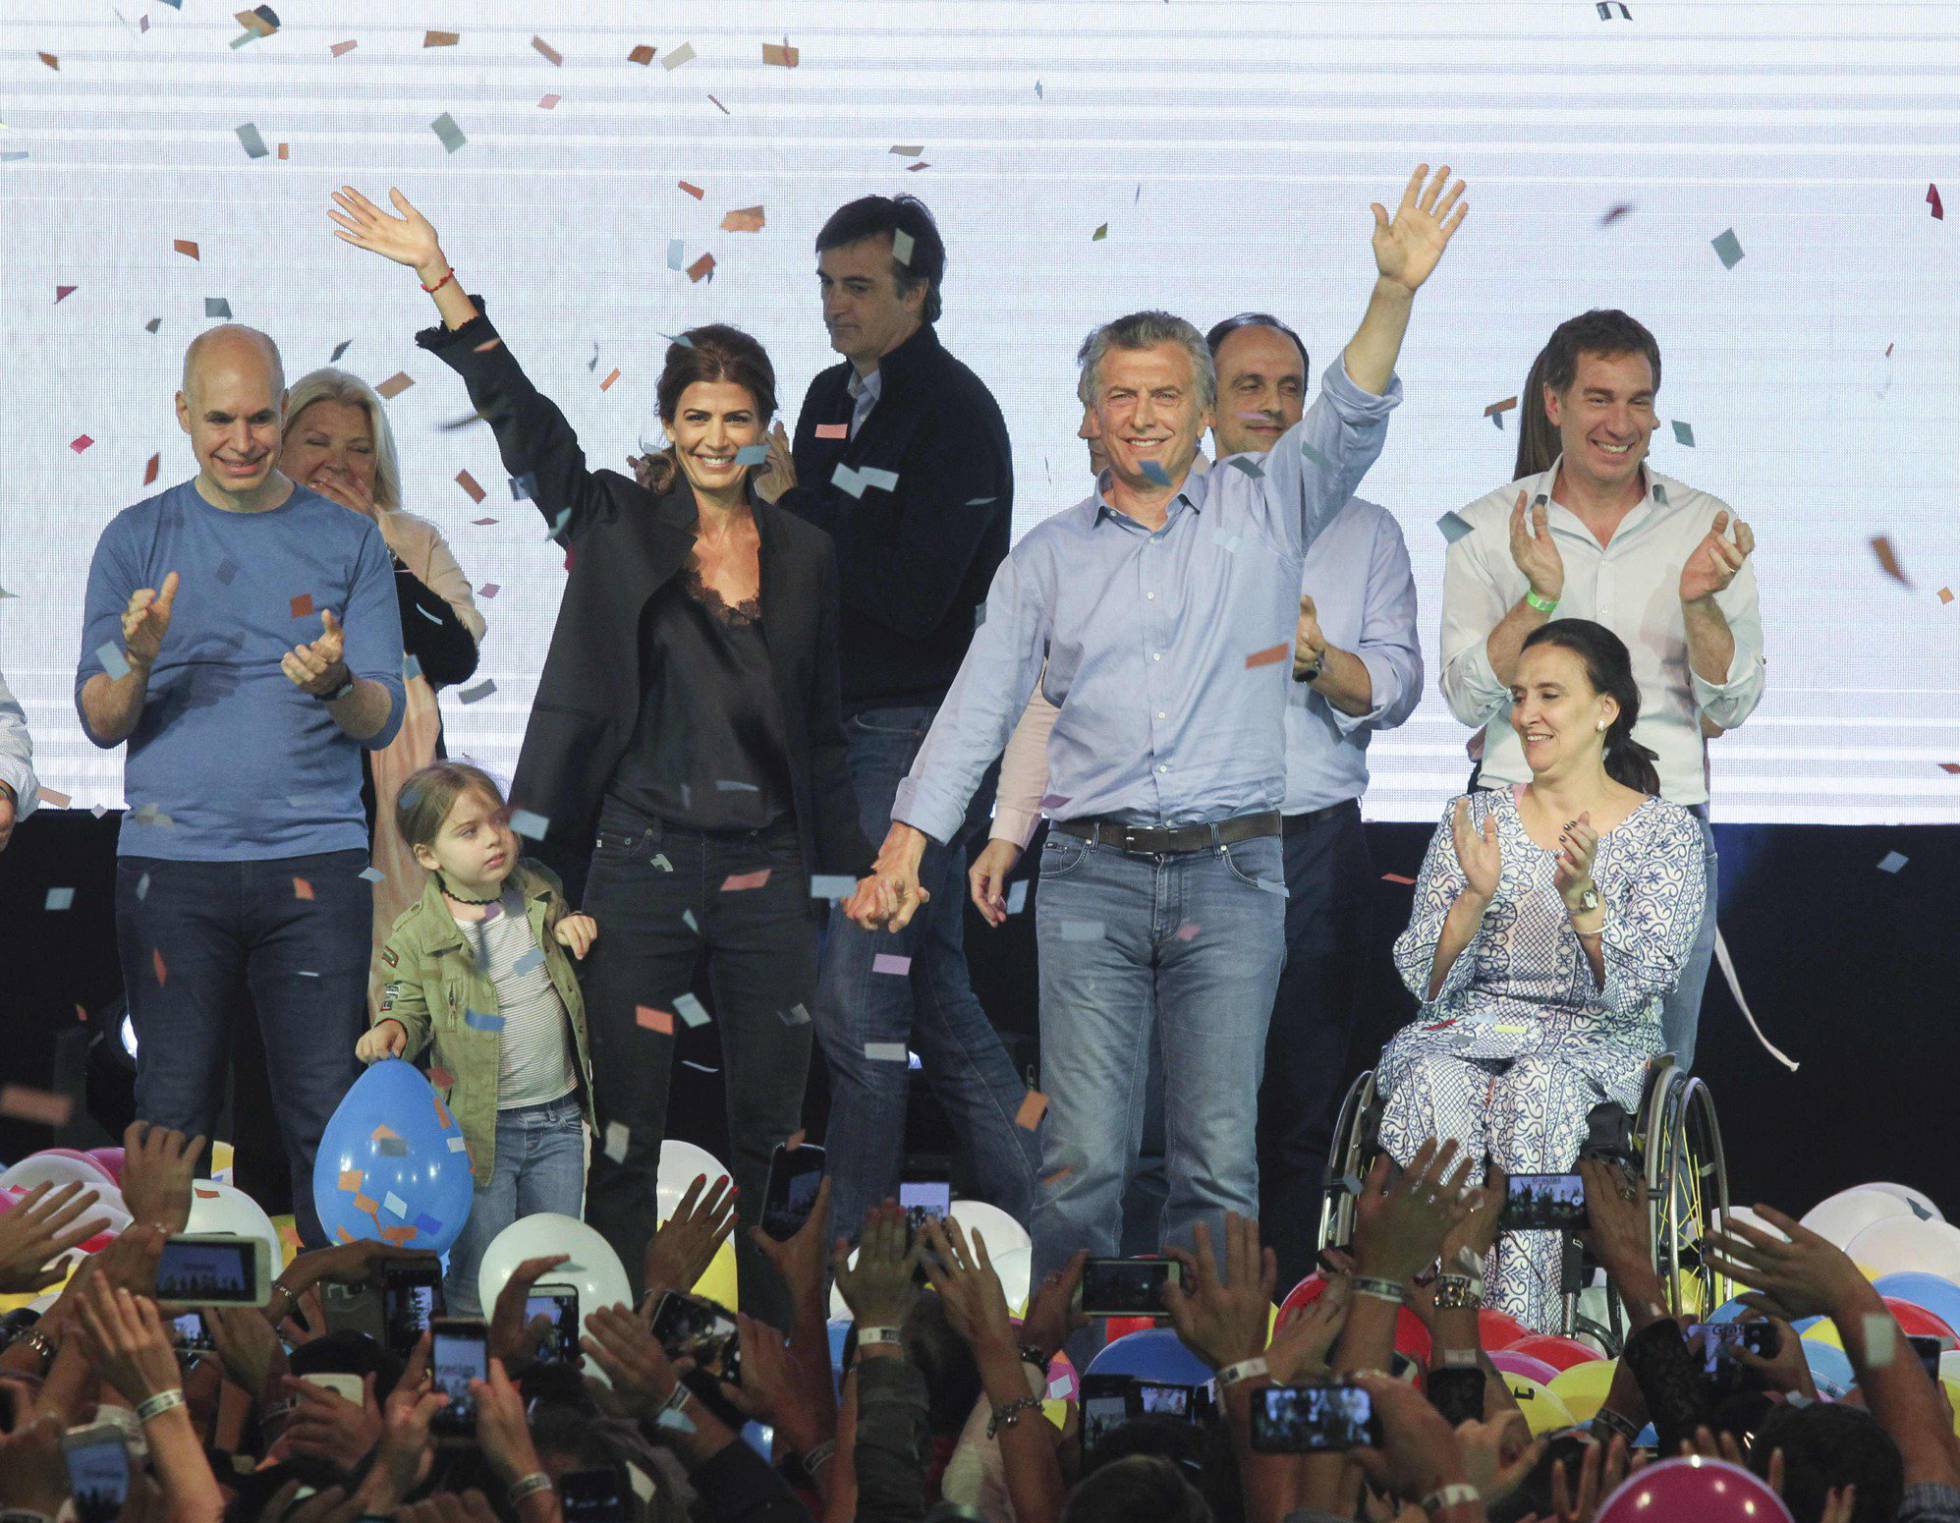 Macri ganó la presidencia en argentina - Página 9 1508779553_248321_1508780245_noticia_normal_recorte1